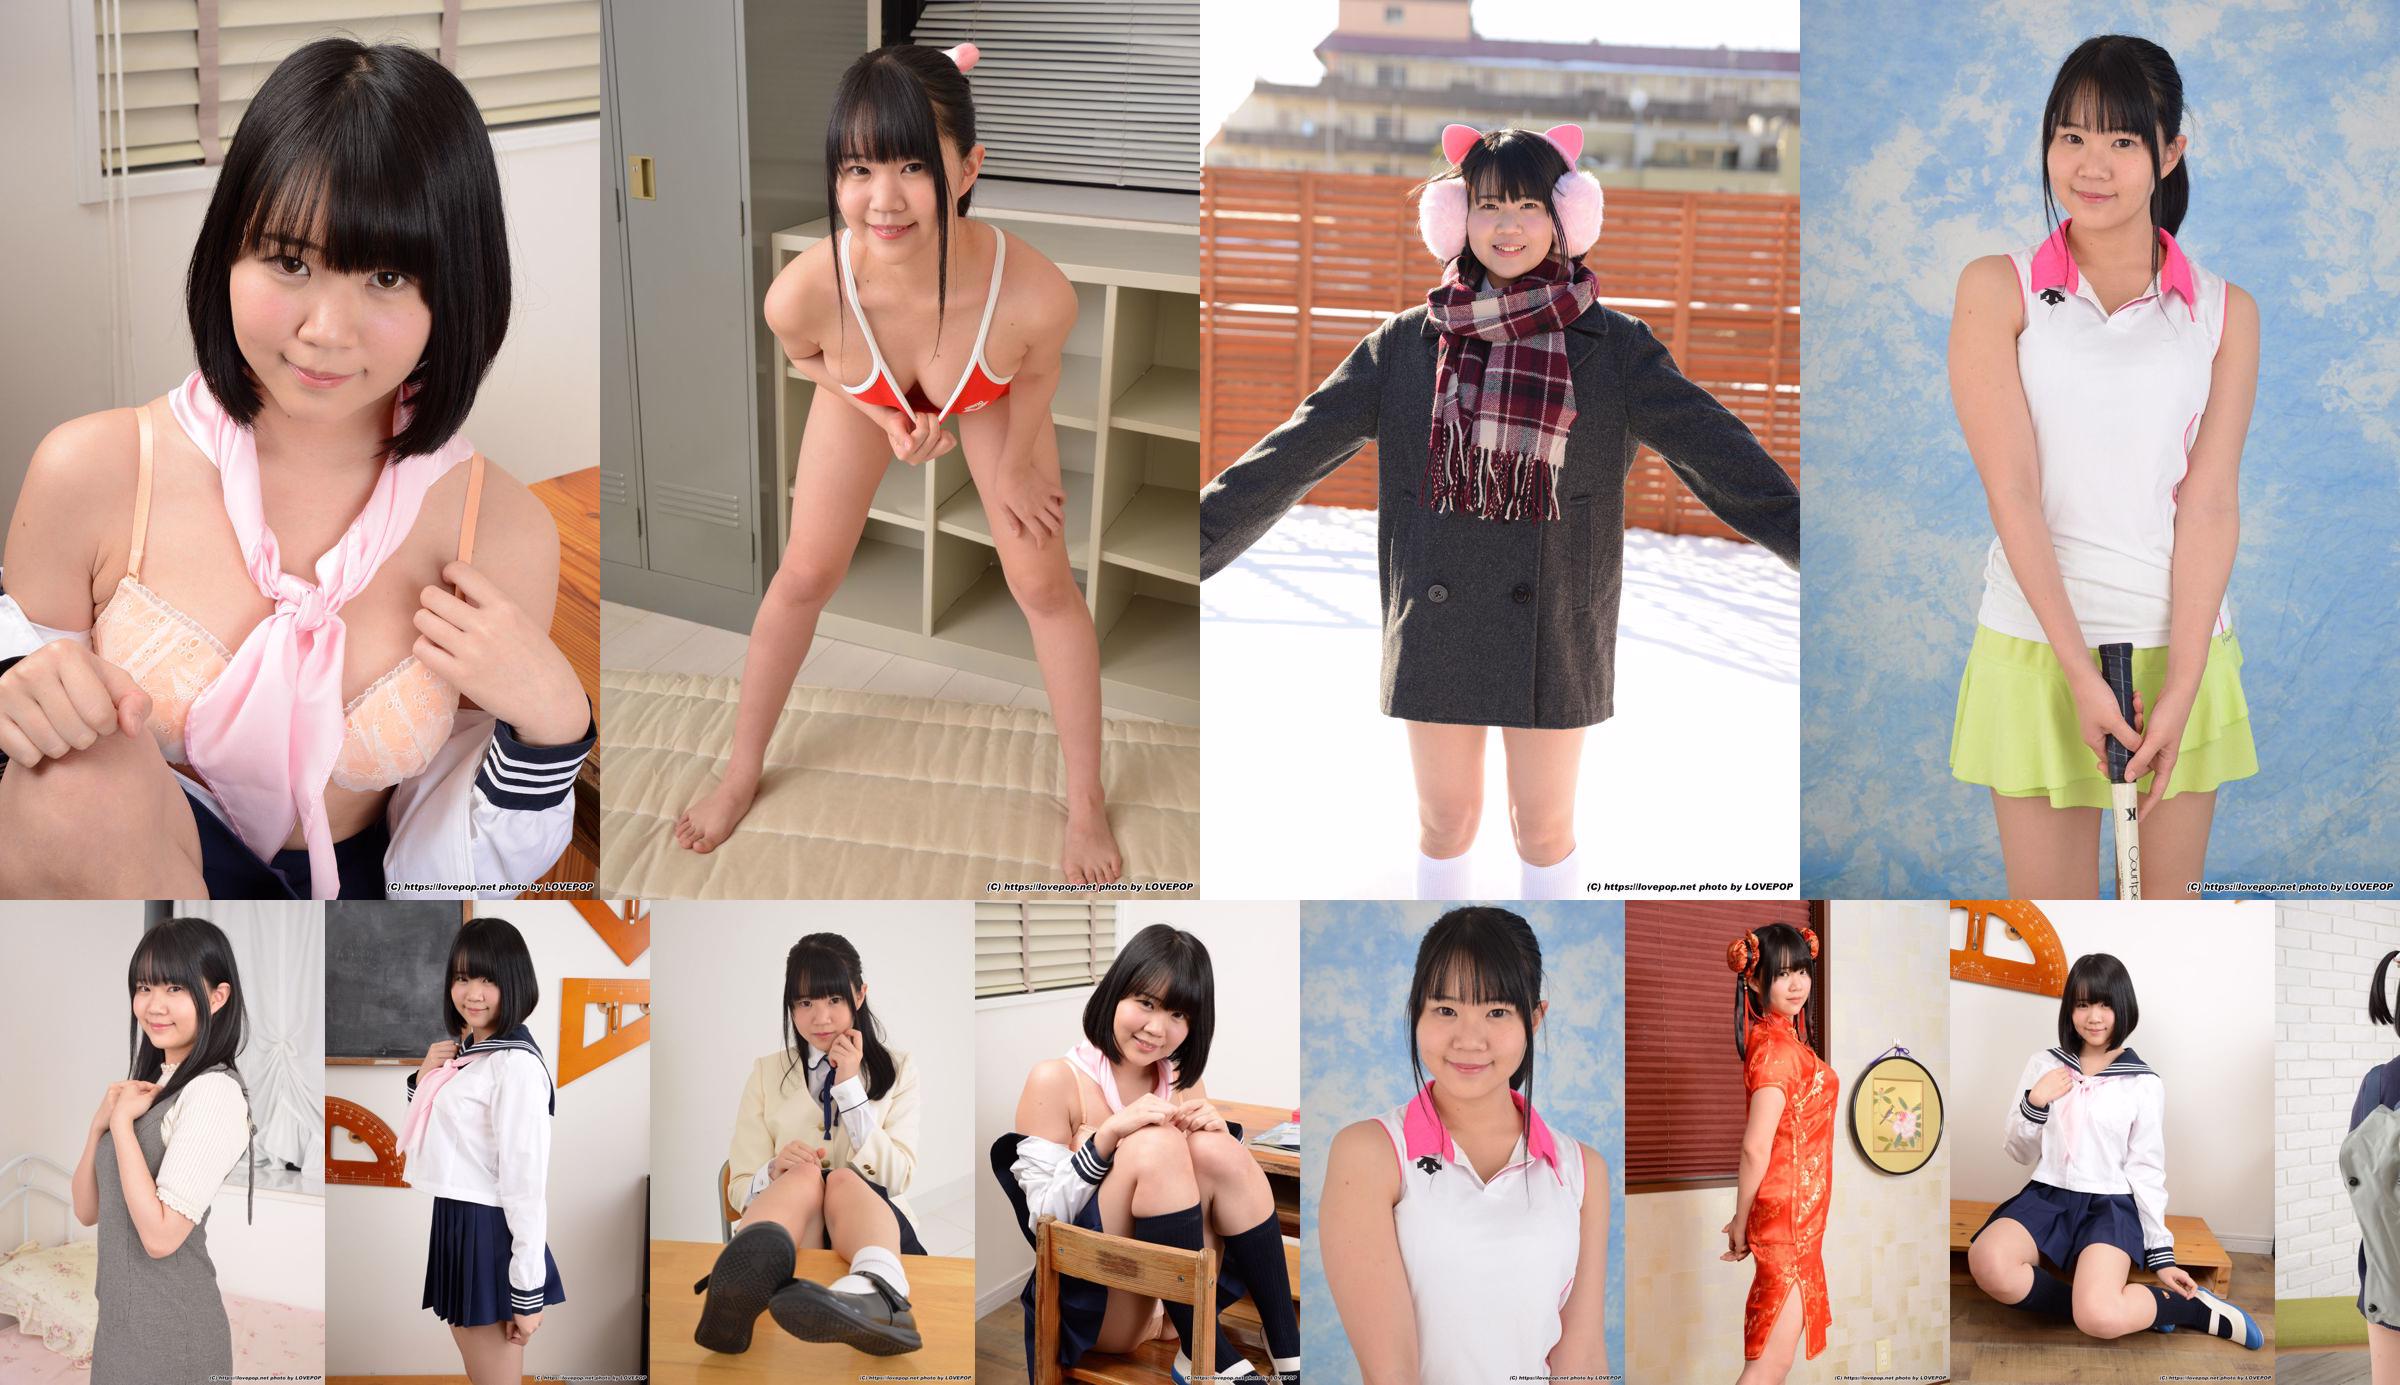 [LOVEPOP] Hinata Suzumori Suzumori Hinata / Suzumori ひなた Photoset 09 No.8bfb0f Page 9